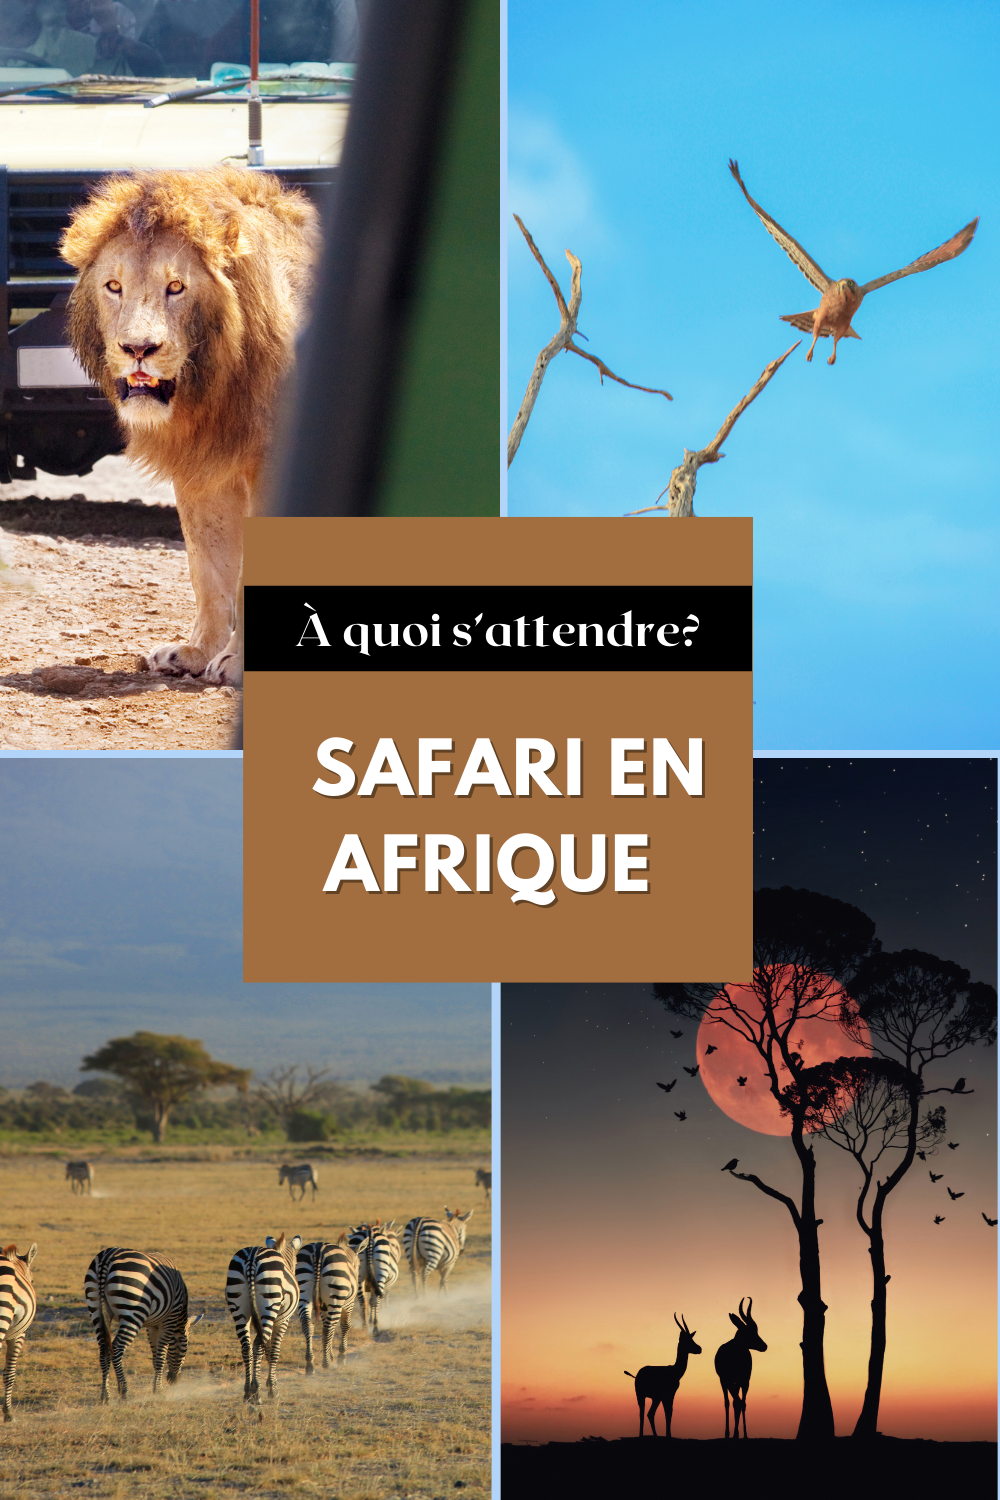 Safari en Afrique, à quoi s'attendre?